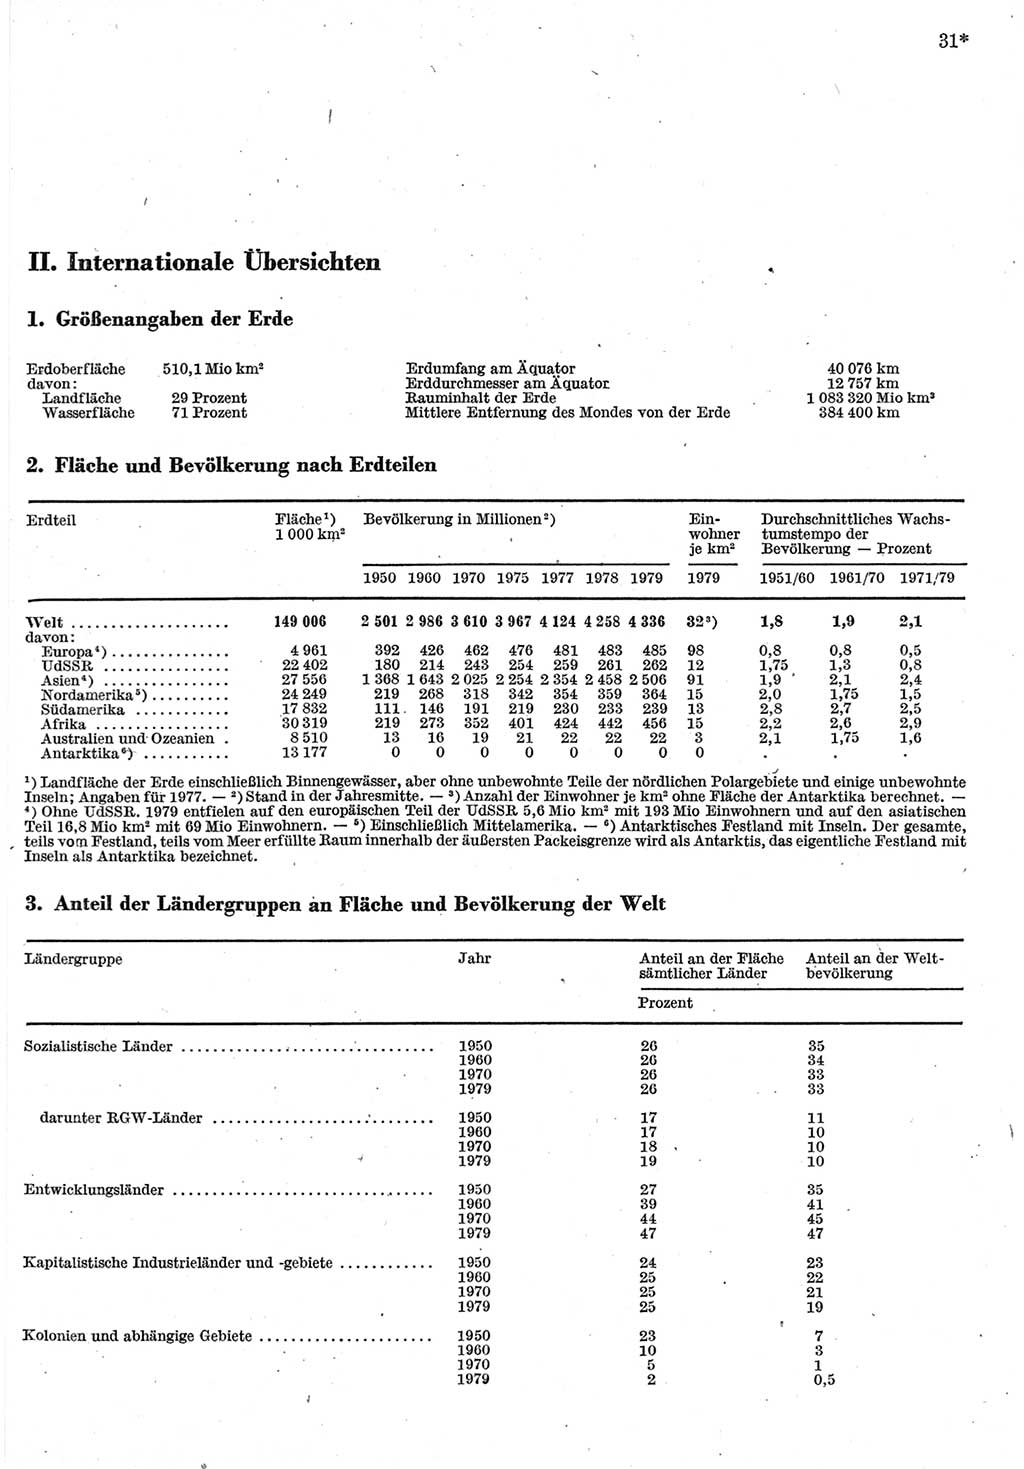 Statistisches Jahrbuch der Deutschen Demokratischen Republik (DDR) 1980, Seite 31 (Stat. Jb. DDR 1980, S. 31)